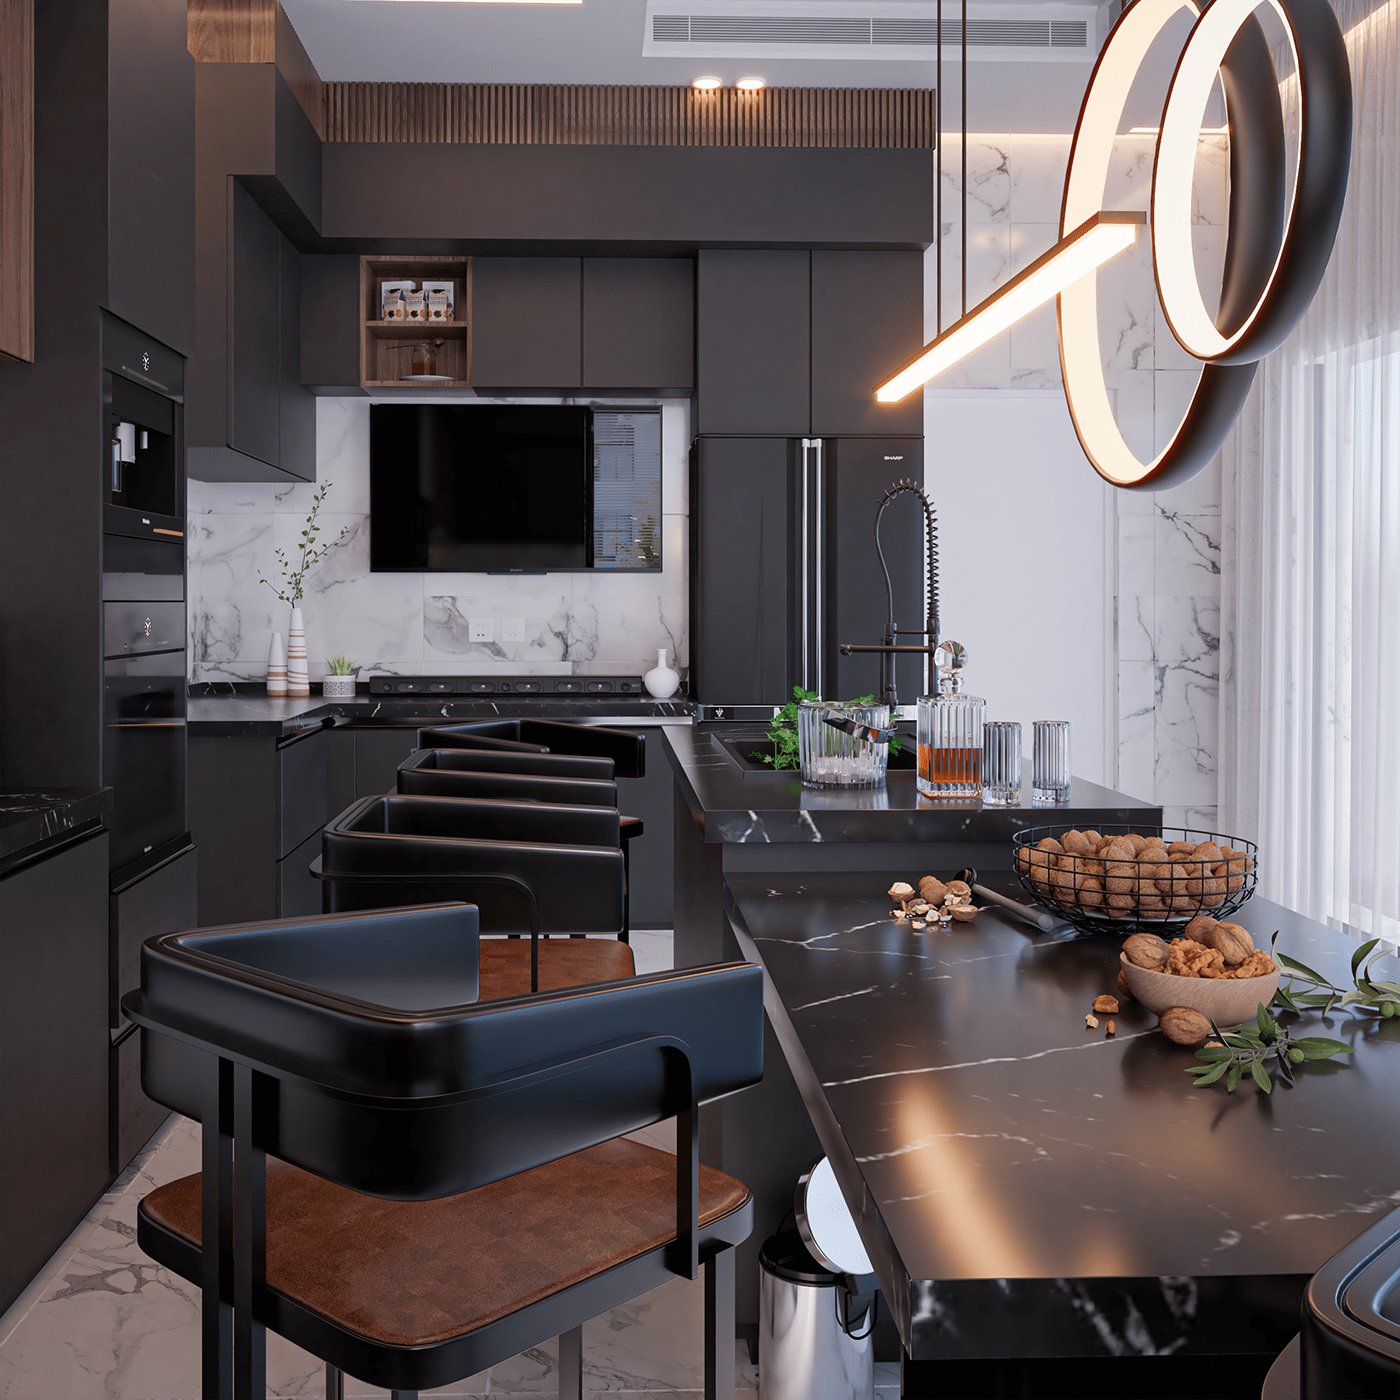 architecture archviz interior design  kitchen kitchen design matteblack realistic renders  renderbox rendering renderservice